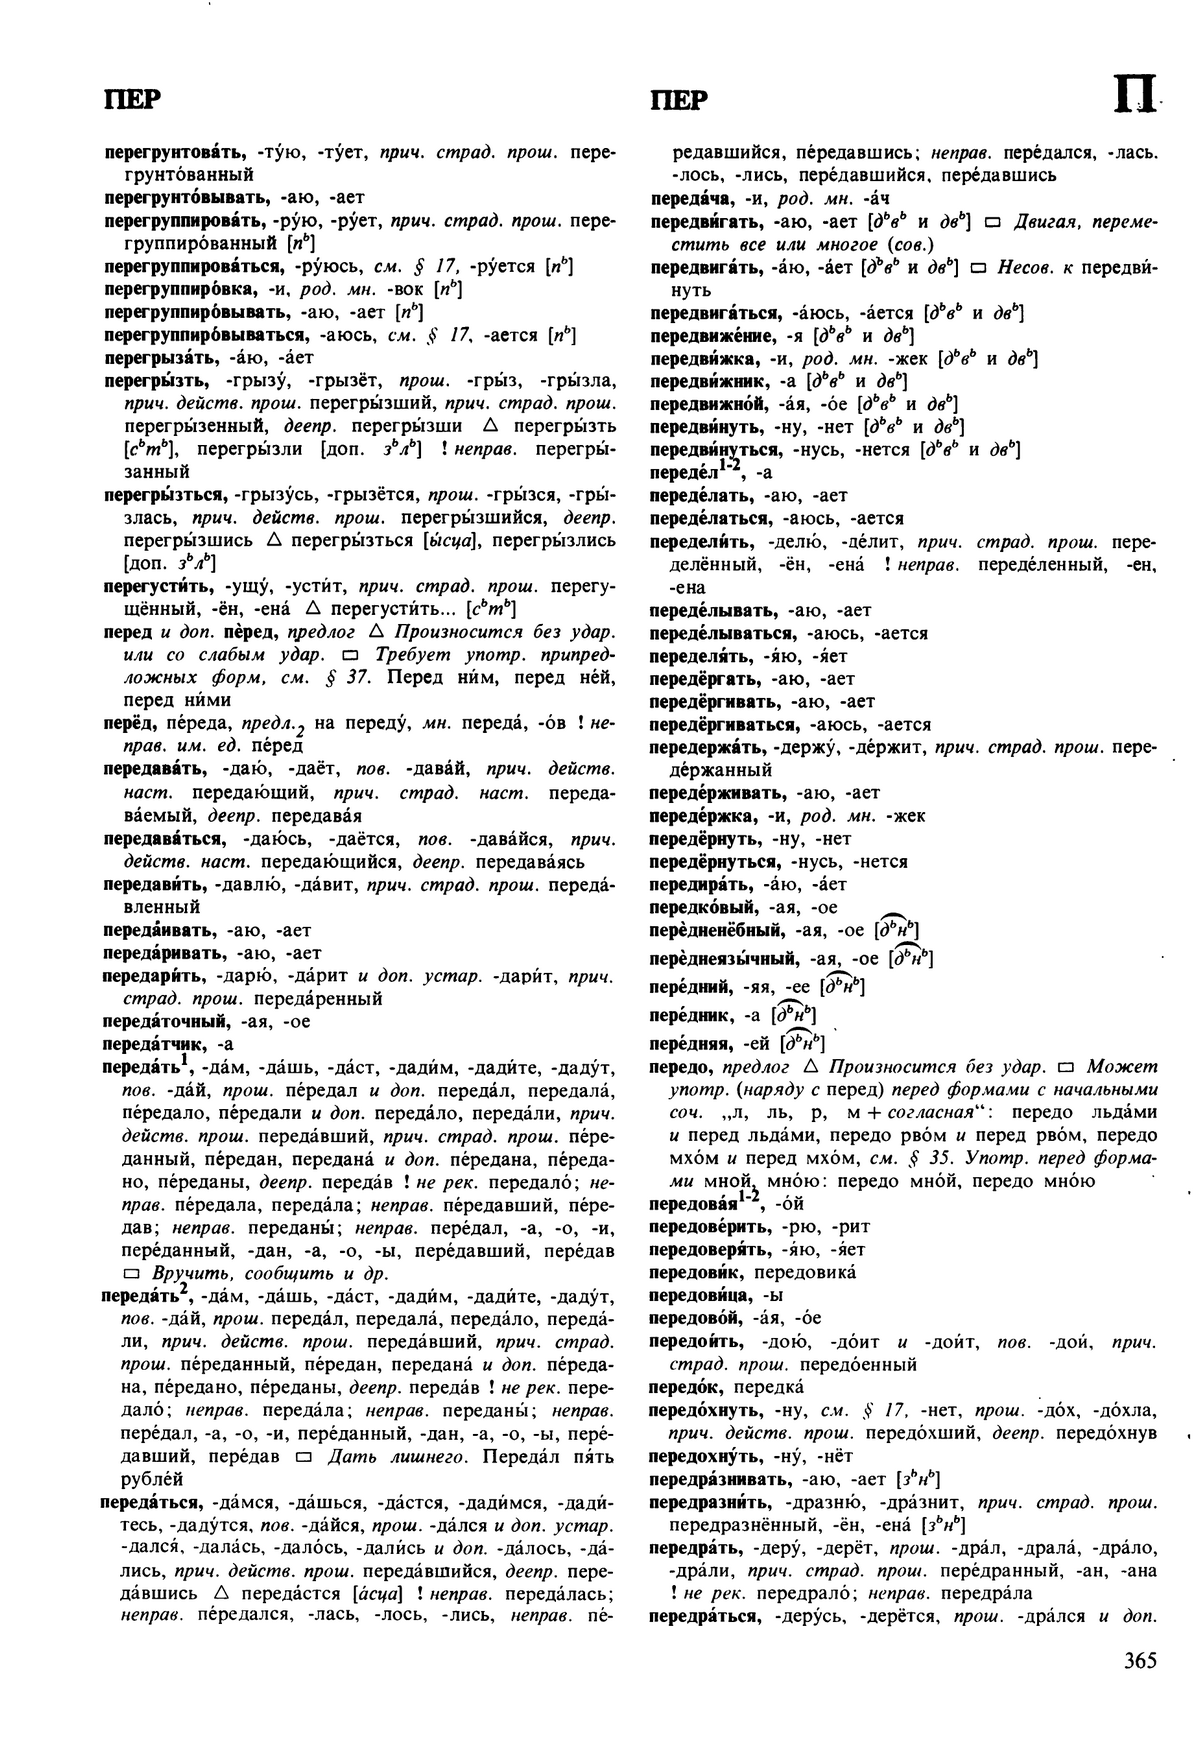 Фотокопия pdf / скан страницы 365 орфоэпического словаря под редакцией Аванесова (5 издание, 1989 год)